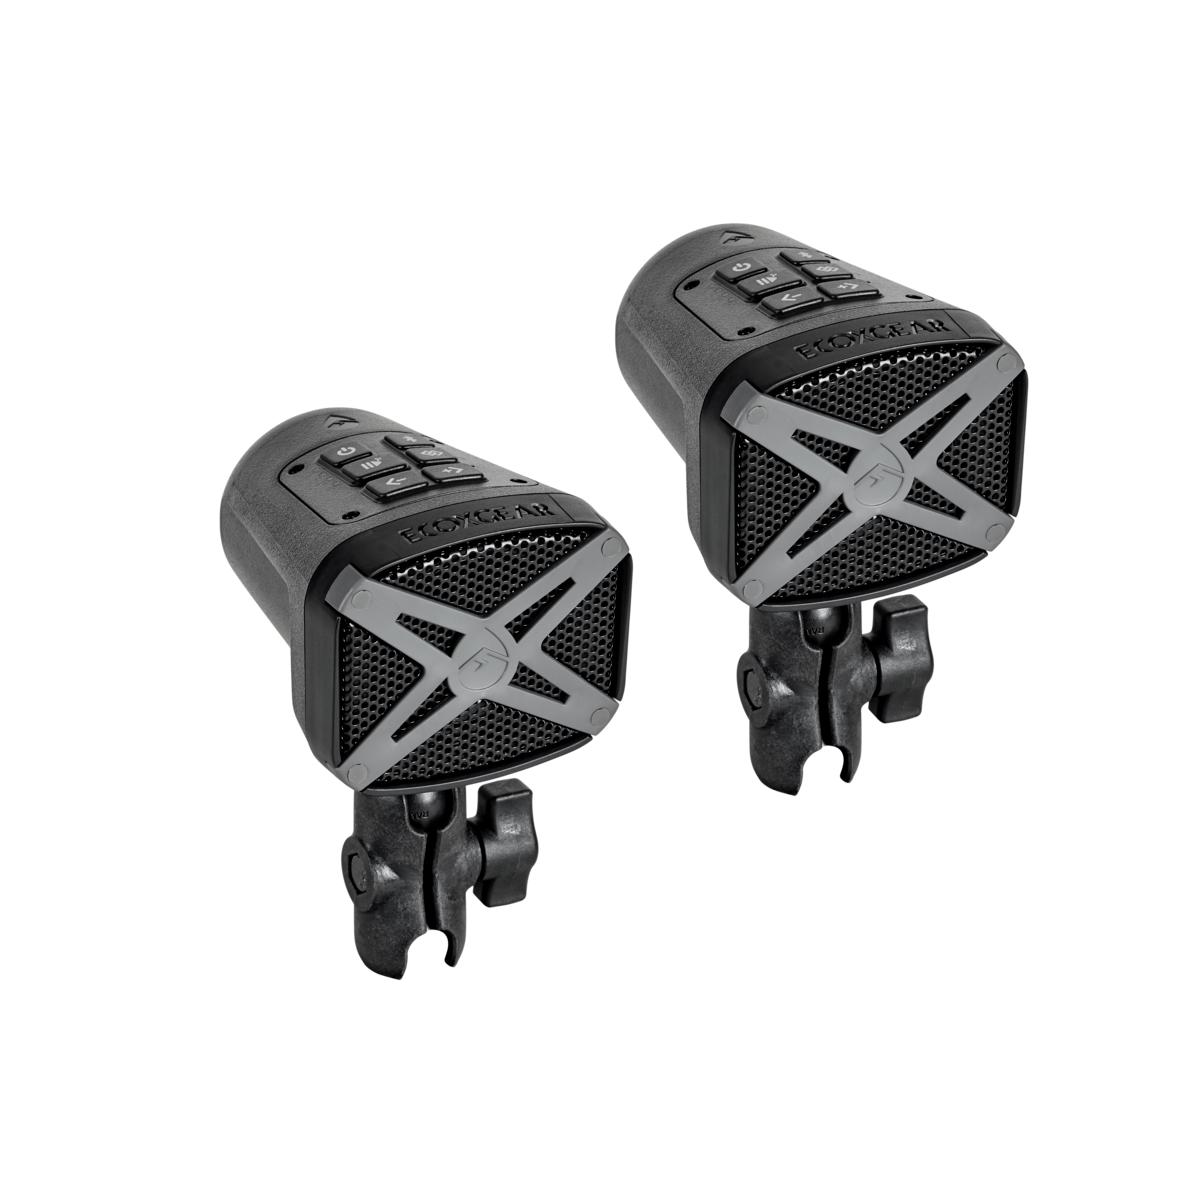 Erikoisvalmisteiset Yamaha EcoXGear® Bluetooth® -kaiuttimet. EcoConnect-kytkentä valmiina stereokuunteluun. Voidaan käyttää yhdessä ja erikseen.